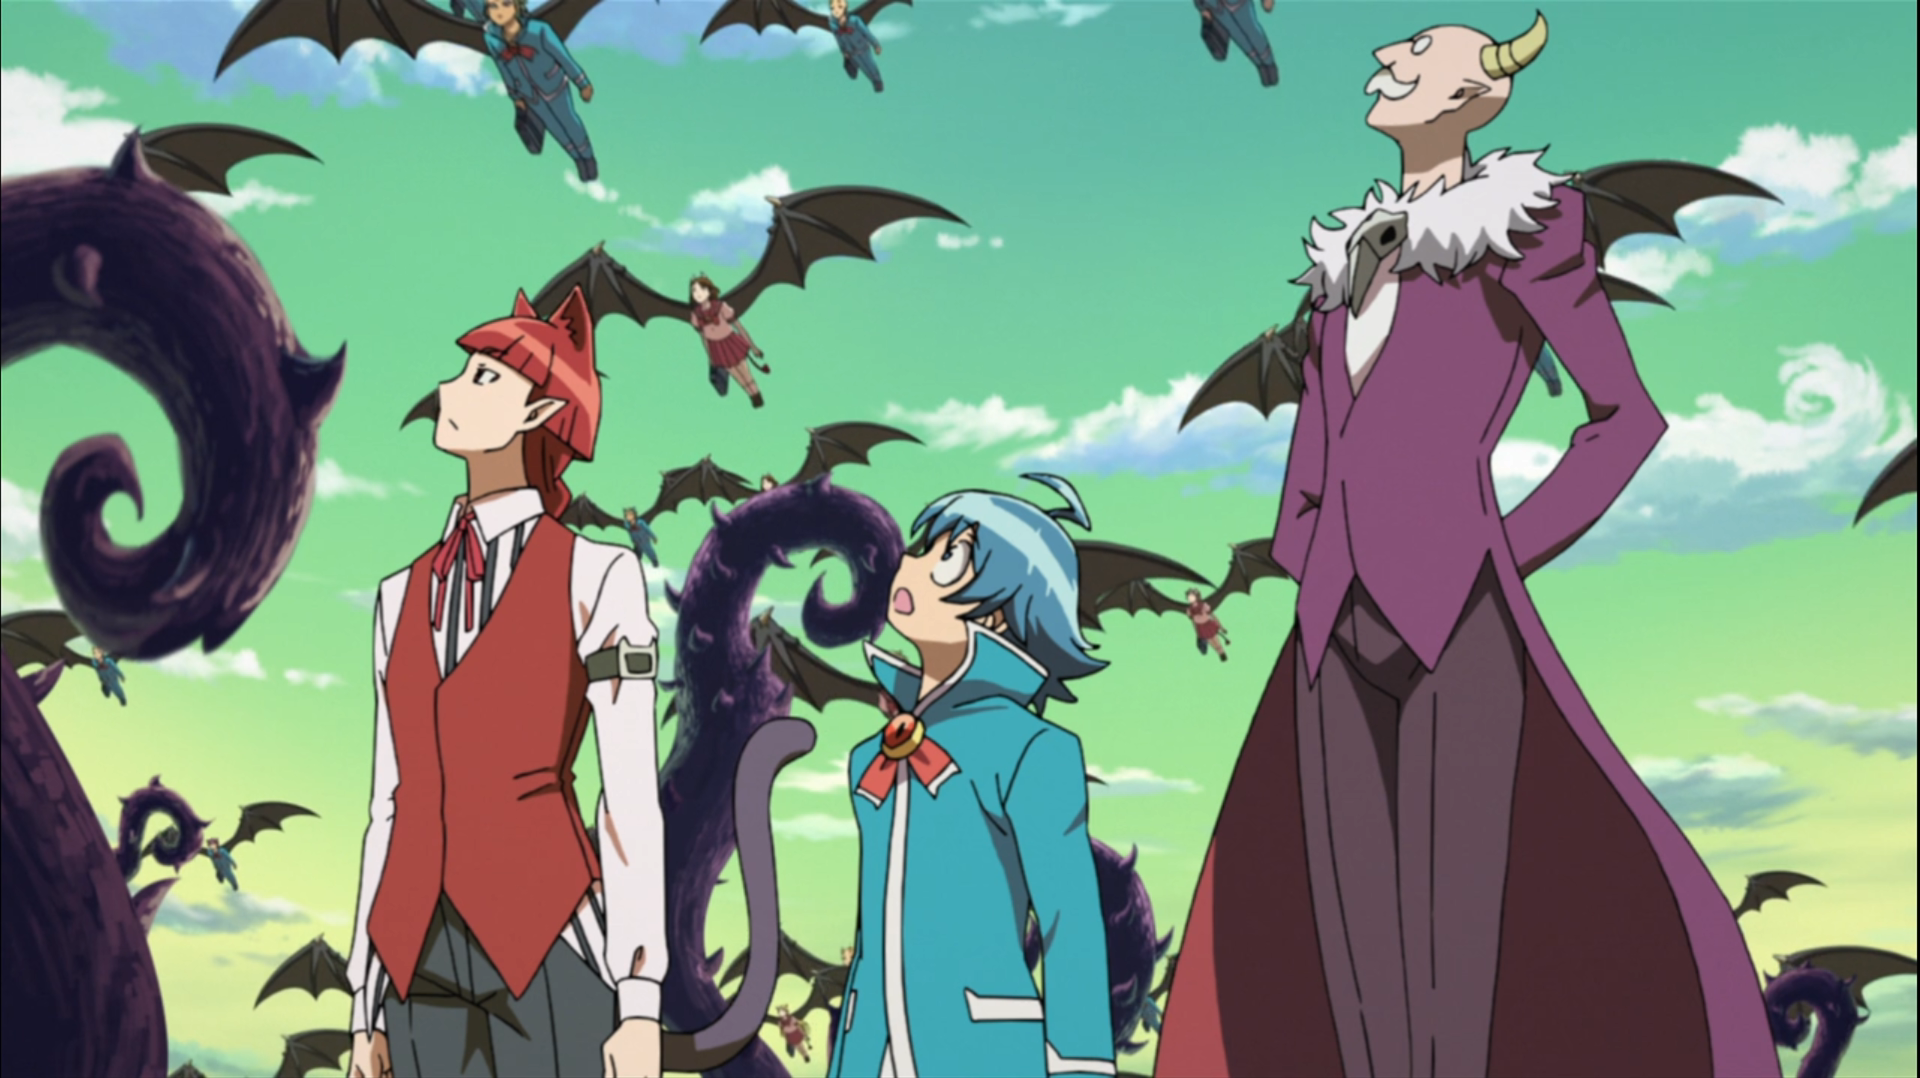 Iruma-kun and Sullivan look up at demon school children flying to school.